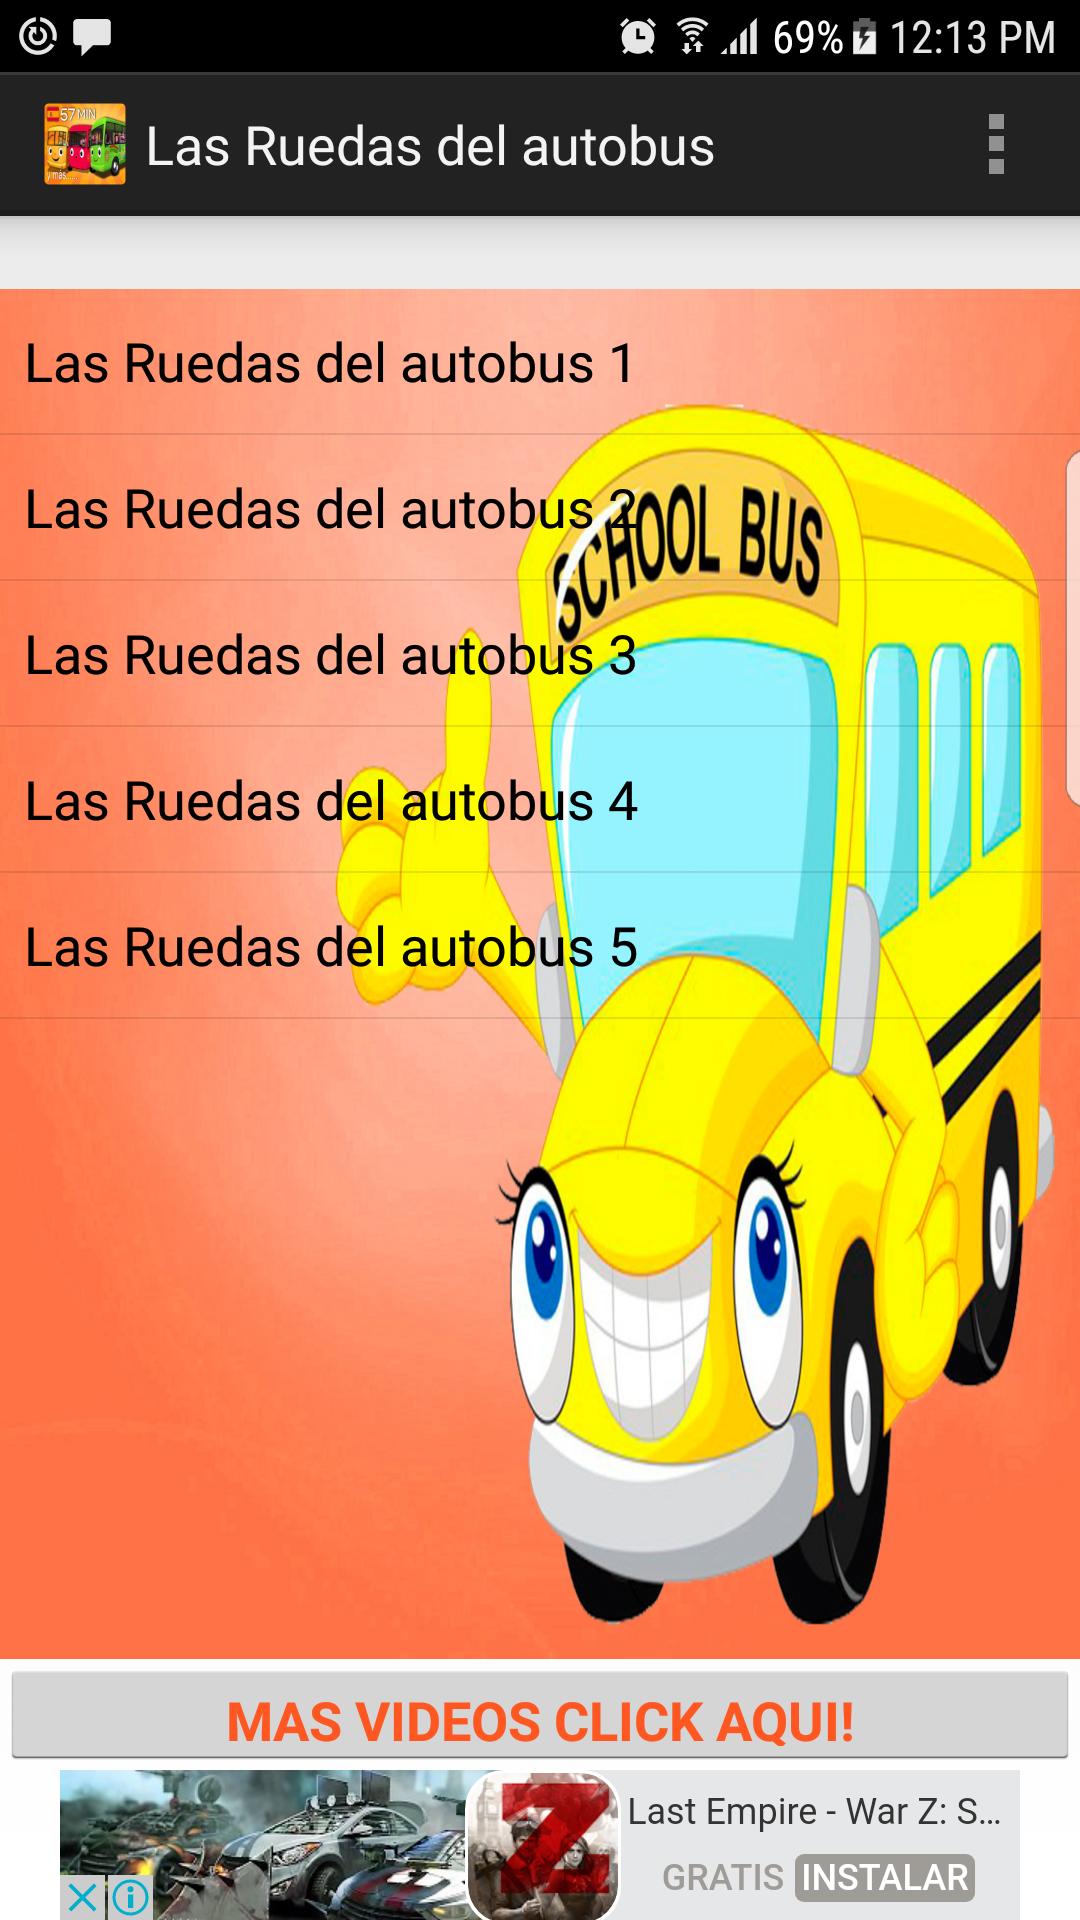 Las Ruedas del Autobus Videos pour Android - Téléchargez l'APK